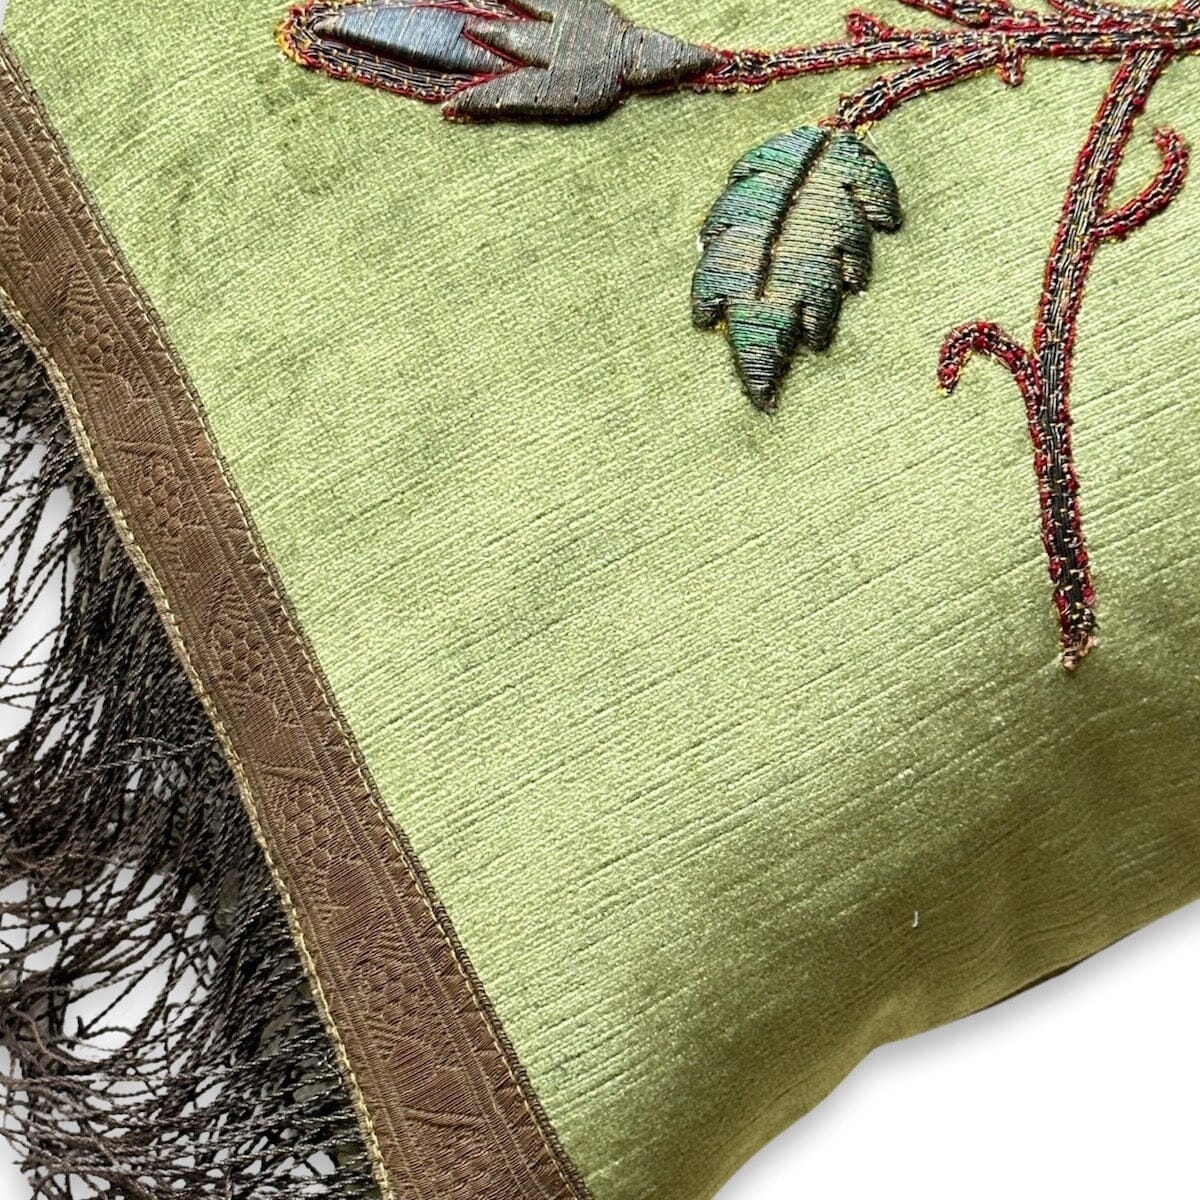 Antique European Raised Metallic Embroidery (E101123 | 12 x 17") New Pillows B. Viz Design 